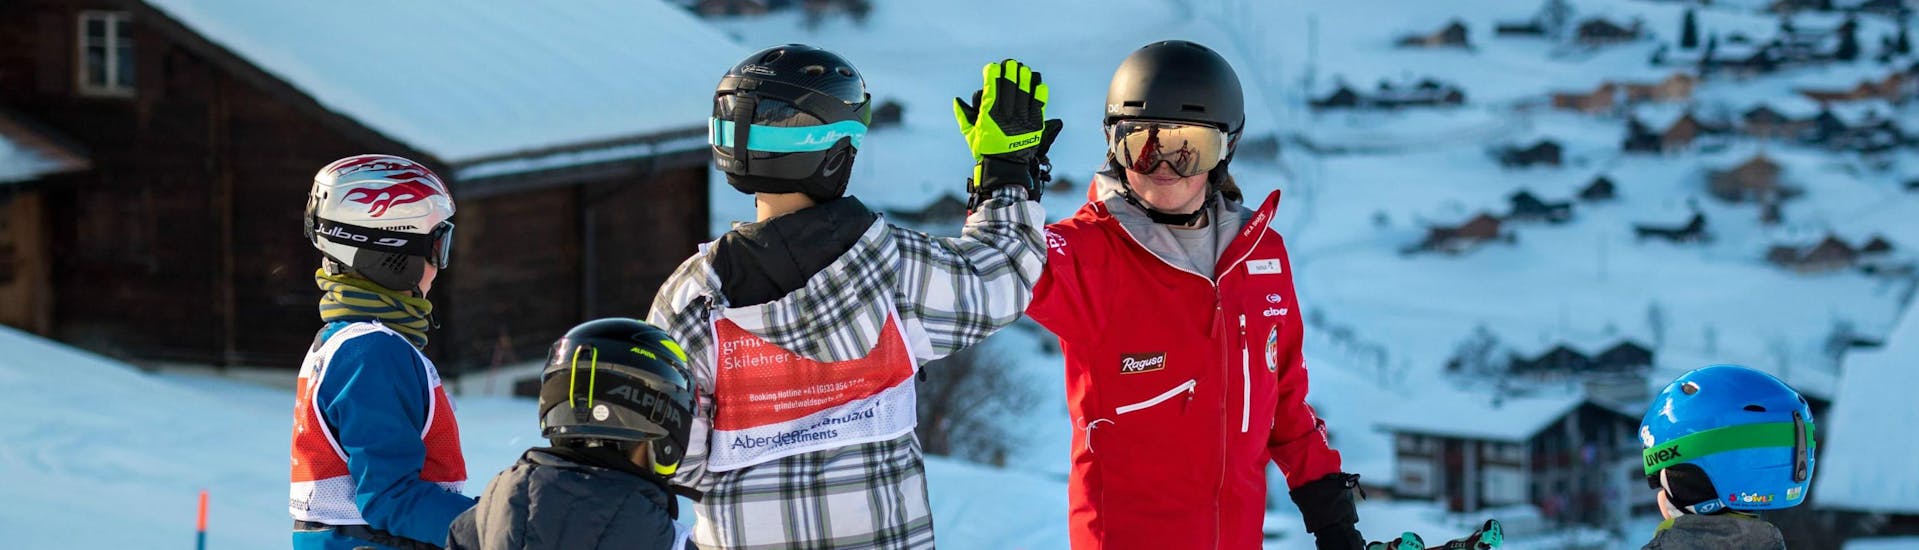 Cours de ski Enfants (6-15 ans) pour les debútants.